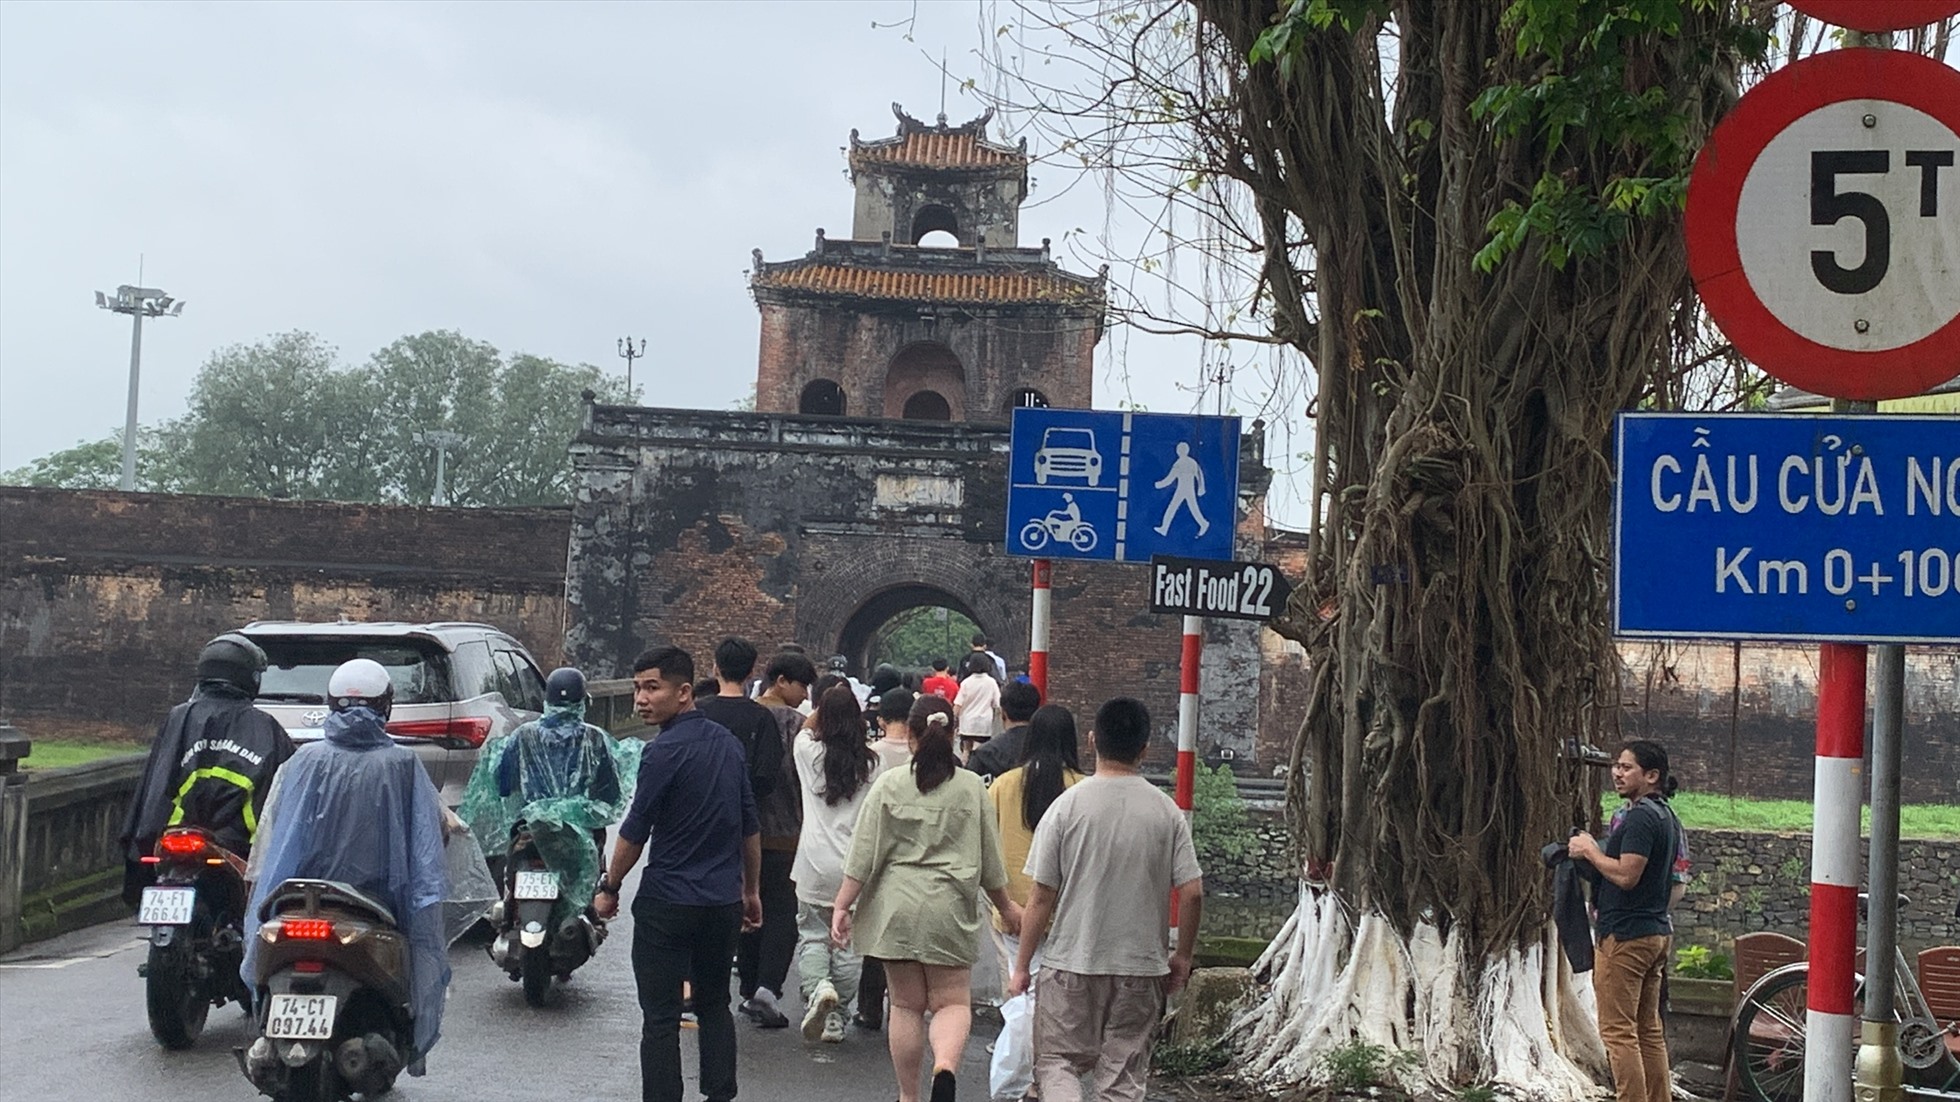 Cuộc thi thiết kế cầu đi bộ vượt qua Hộ Thành hào nối Thượng thành nhằm giải phóng áp lực giao thông cho khu vực cửa Ngăn. Ảnh: Tường Minh